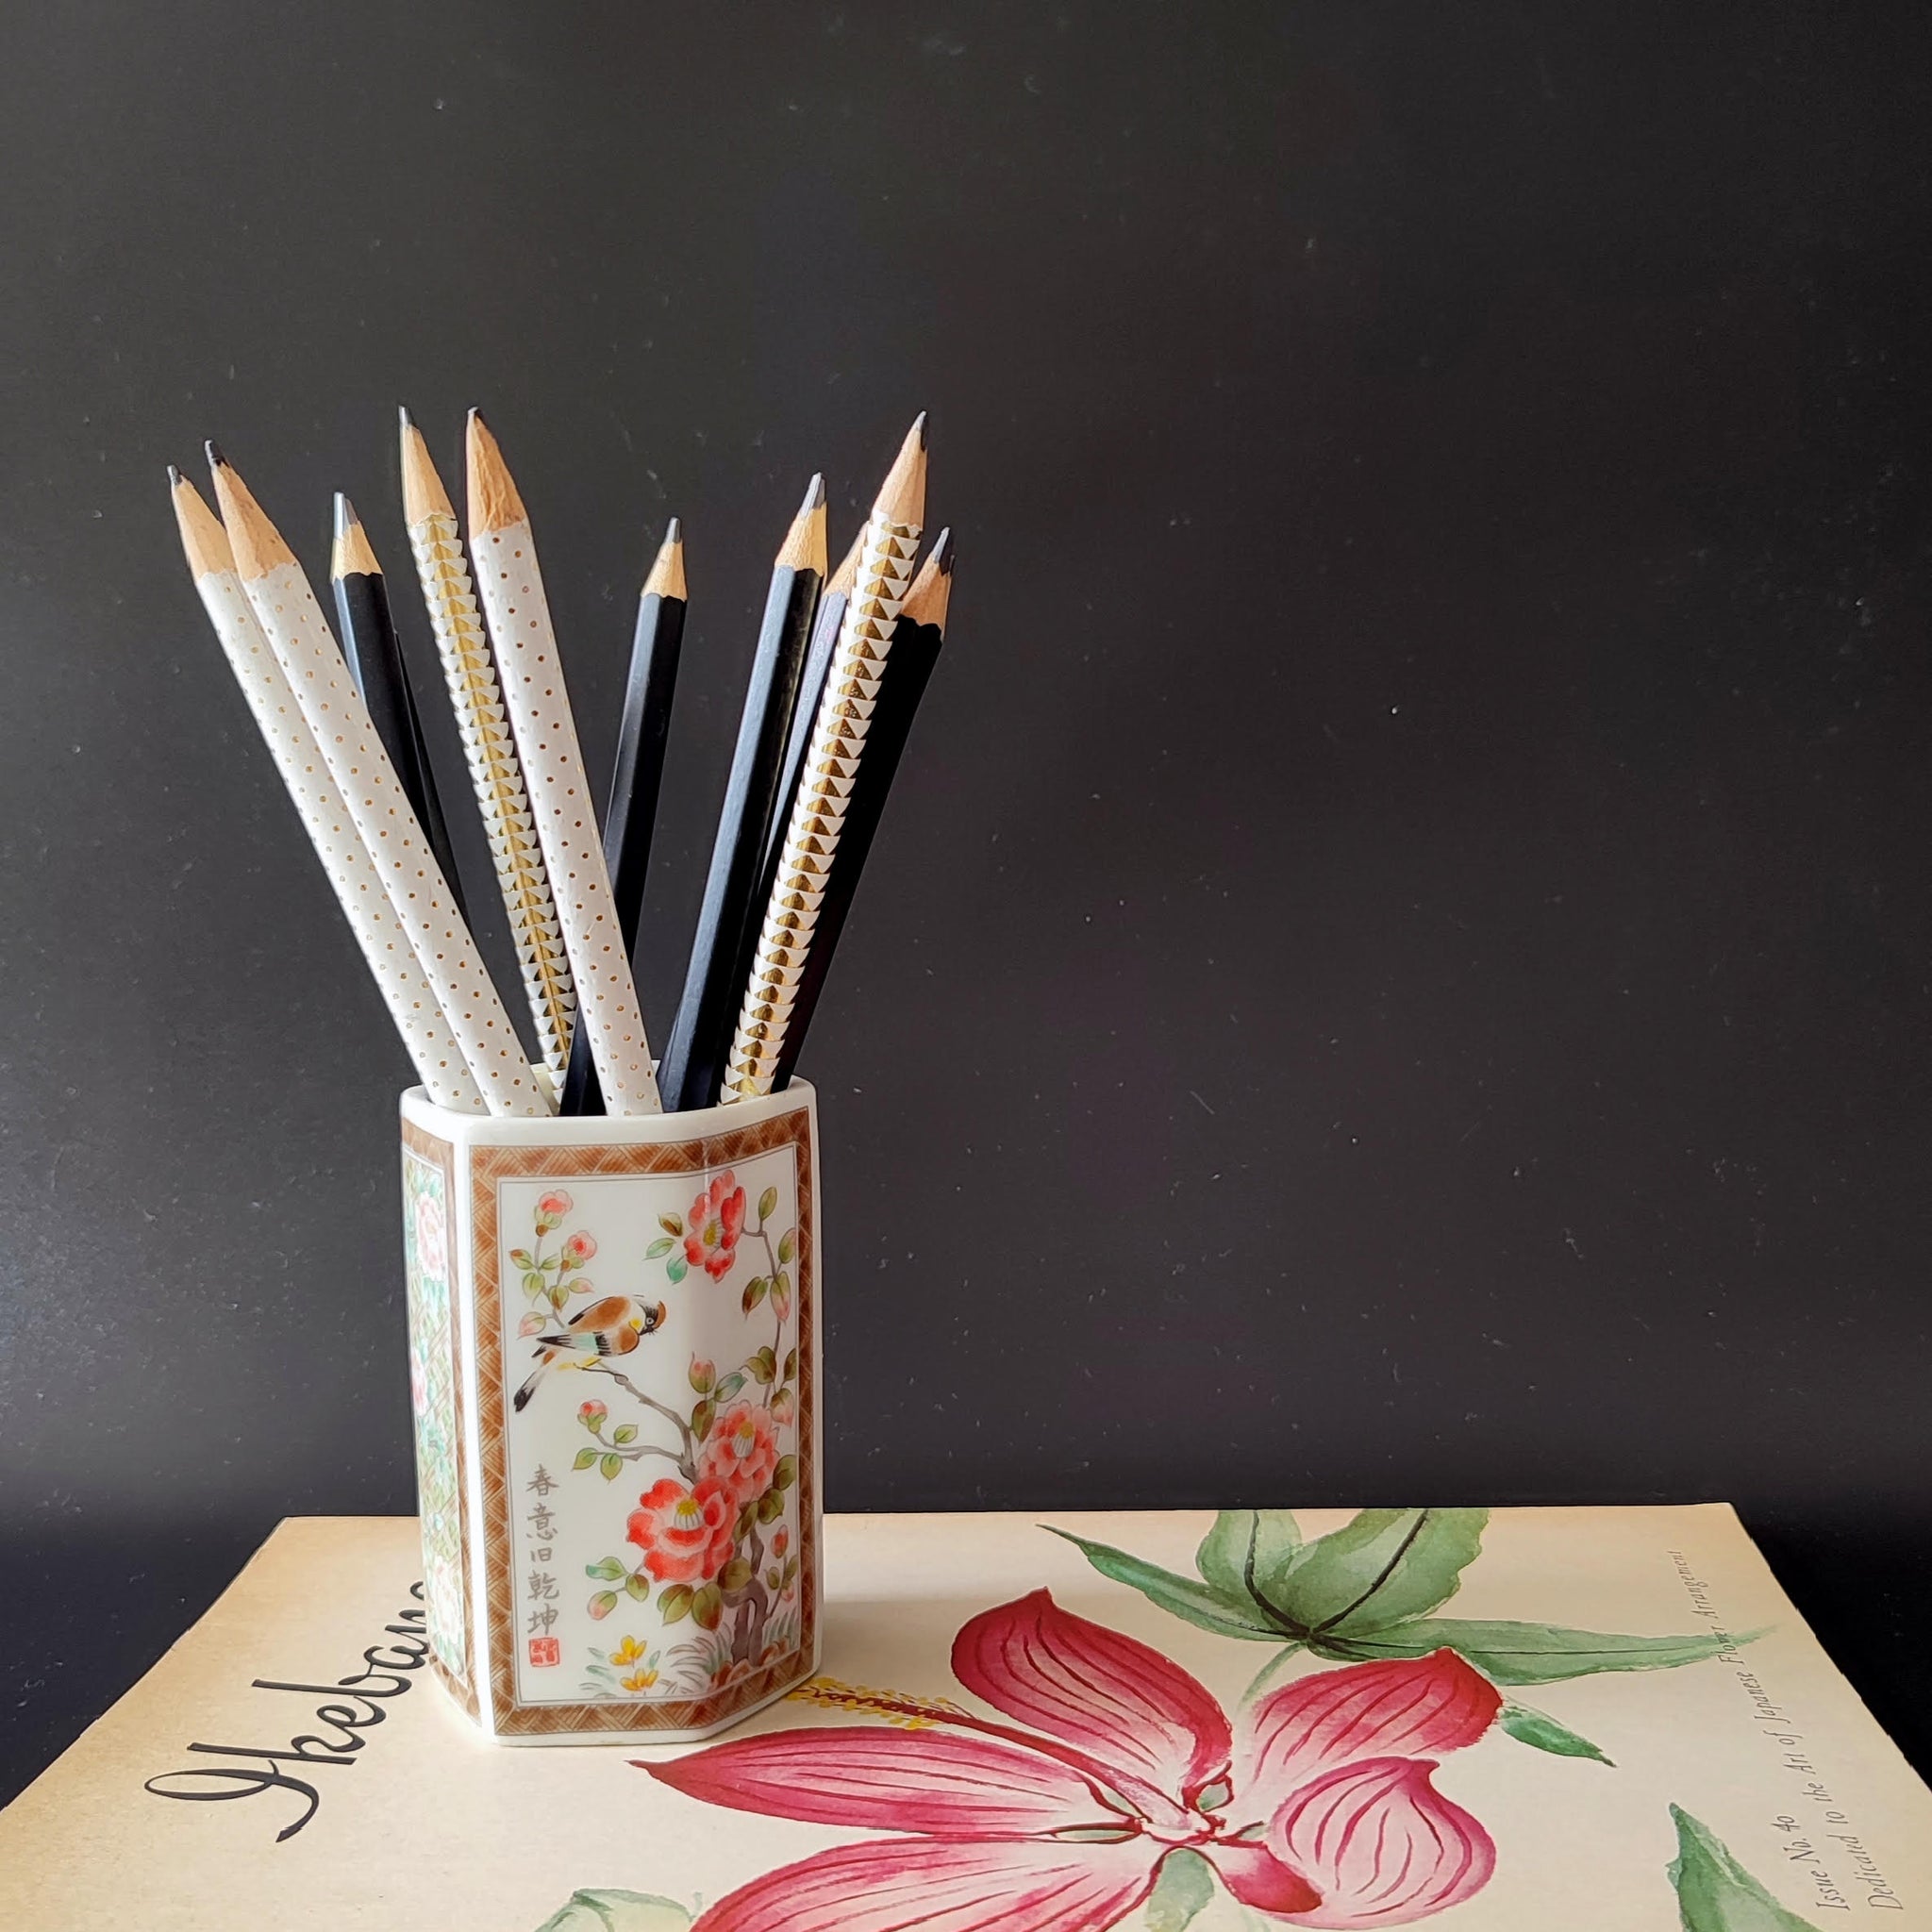 אגרטל קטן/כלי לעפרונות, איור פרחים מסורתי, וינטג' יפני